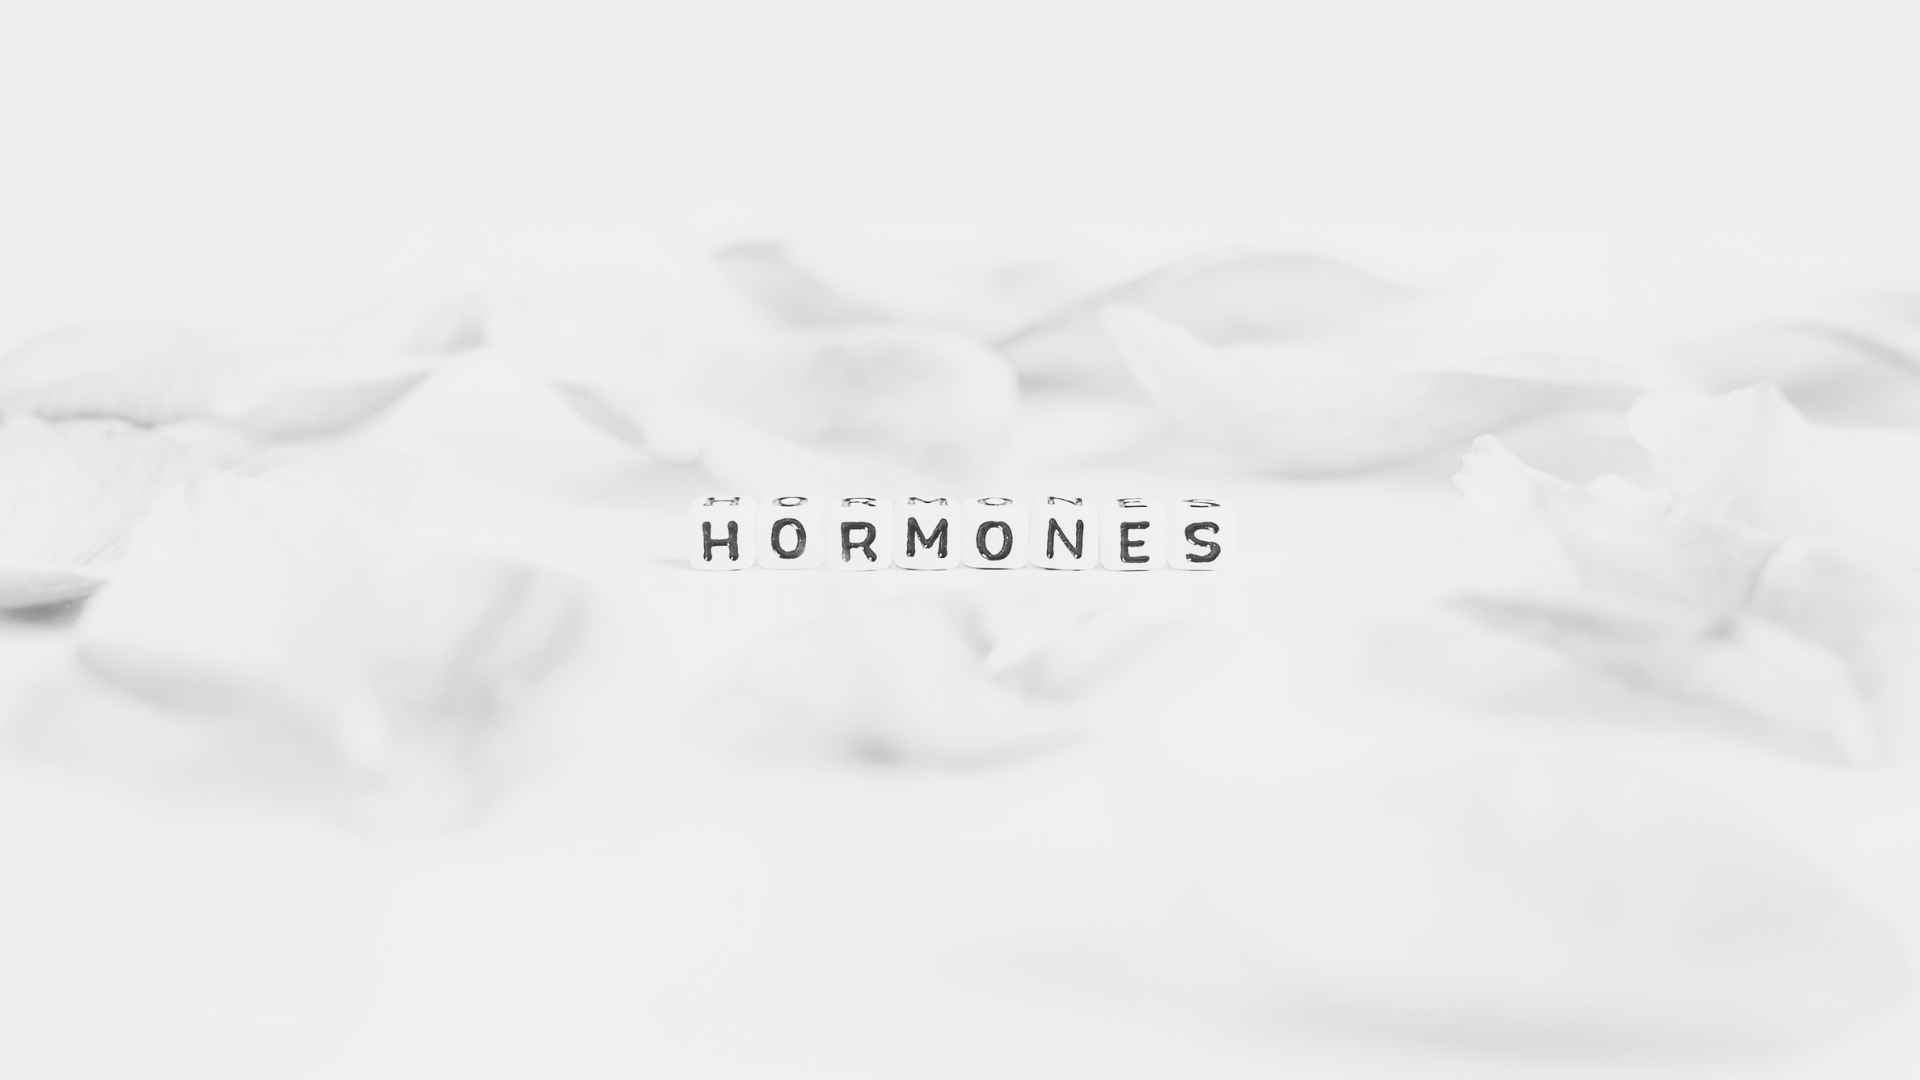 Der Zusammenhang zwischen Hormonen und starkem Schwitzen: Verstehen wir die hormonelle Rolle beim Schwitzen